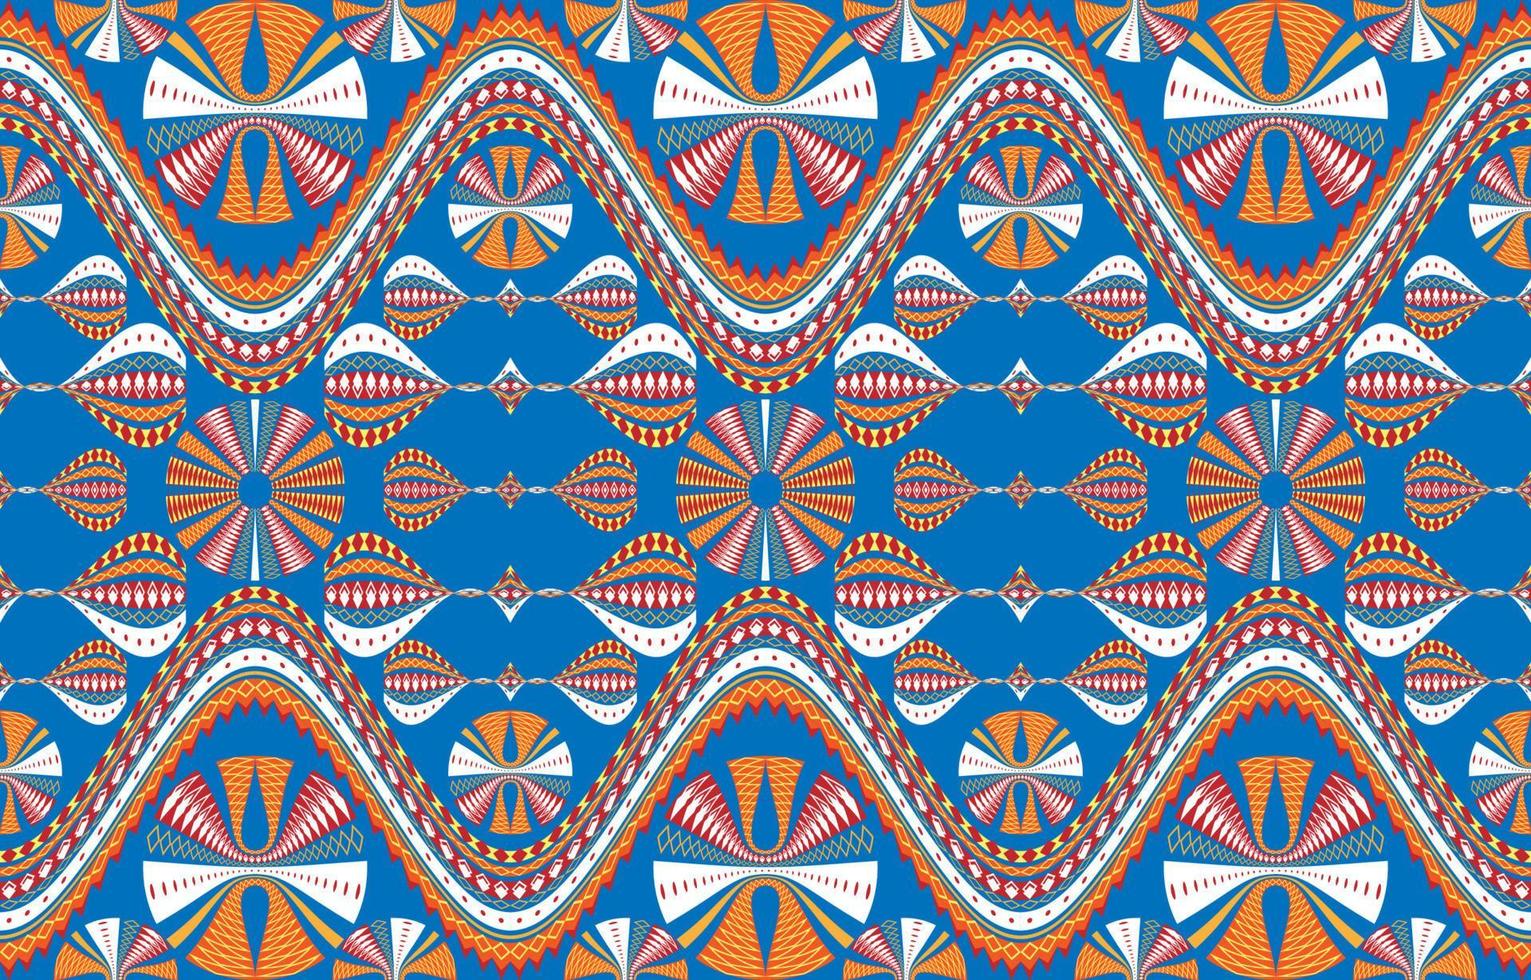 tecido padrão têxtil círculo listras curvas diagonais onduladas. étnico geométrico tribal nativo asteca arabesco tecido tapete indiano árabe africano padrões sem emenda. estilo de bordado gráfico de linha ornamentada. vetor